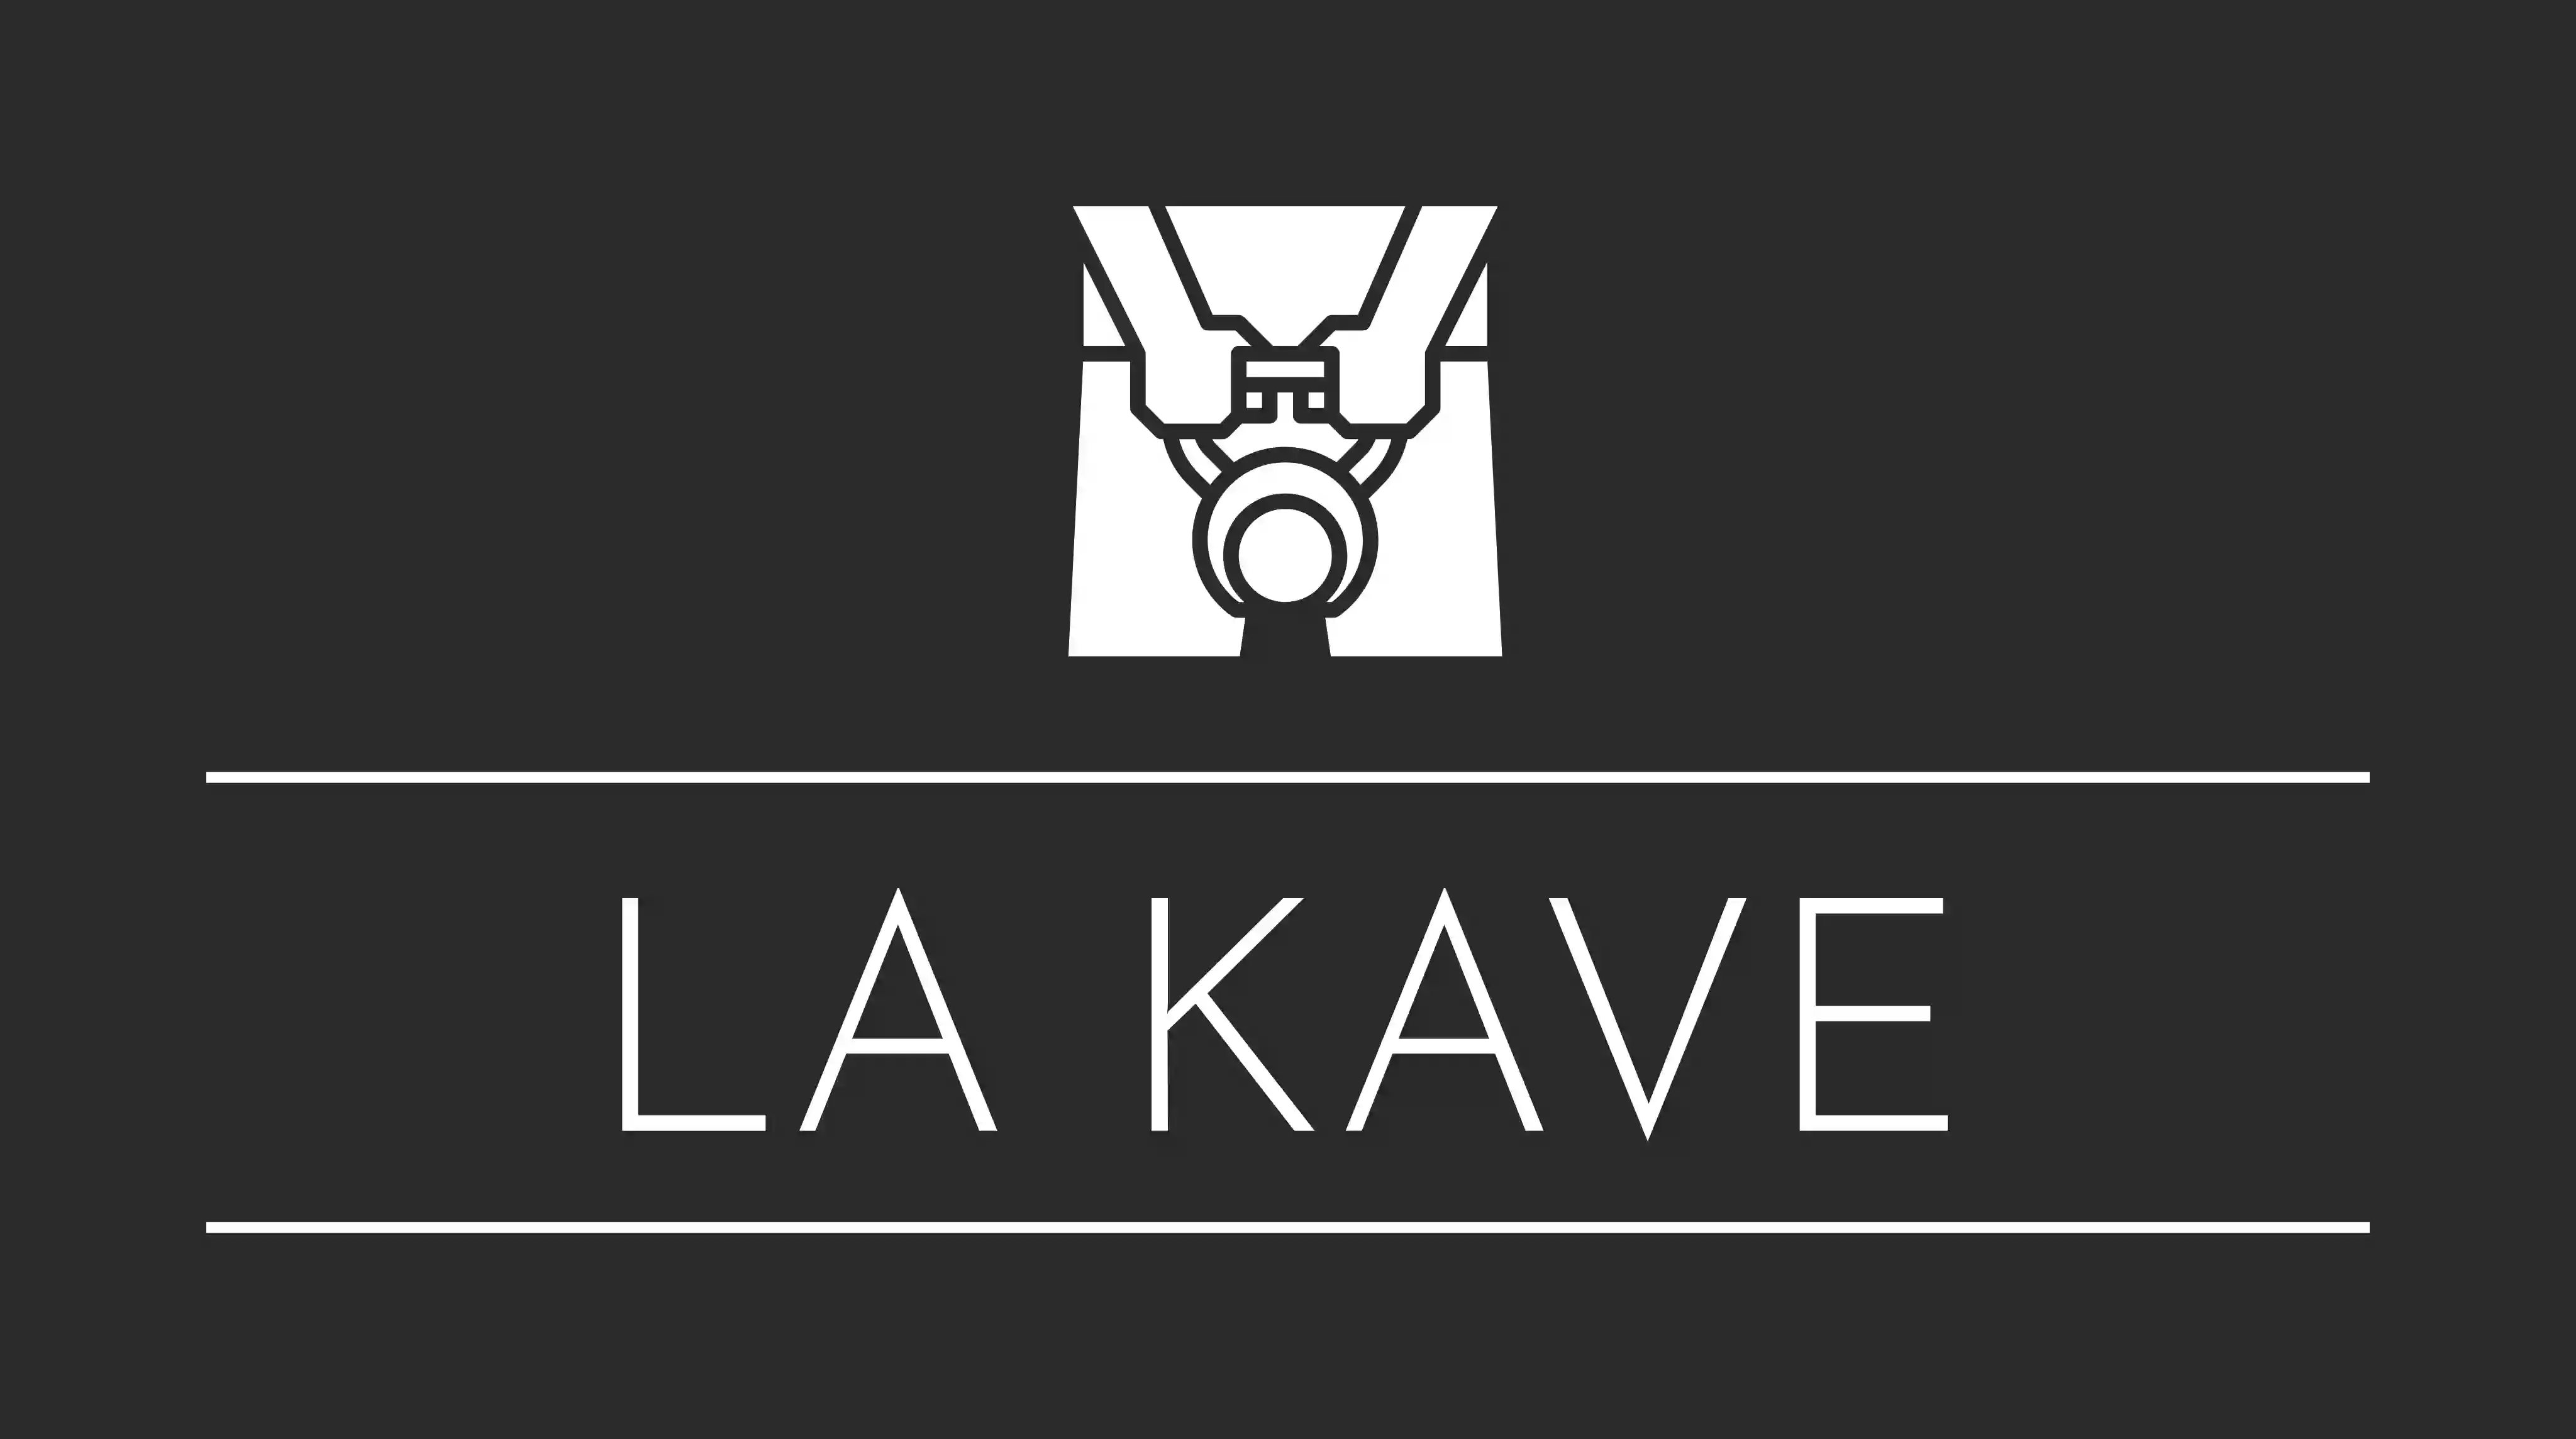 La Kave